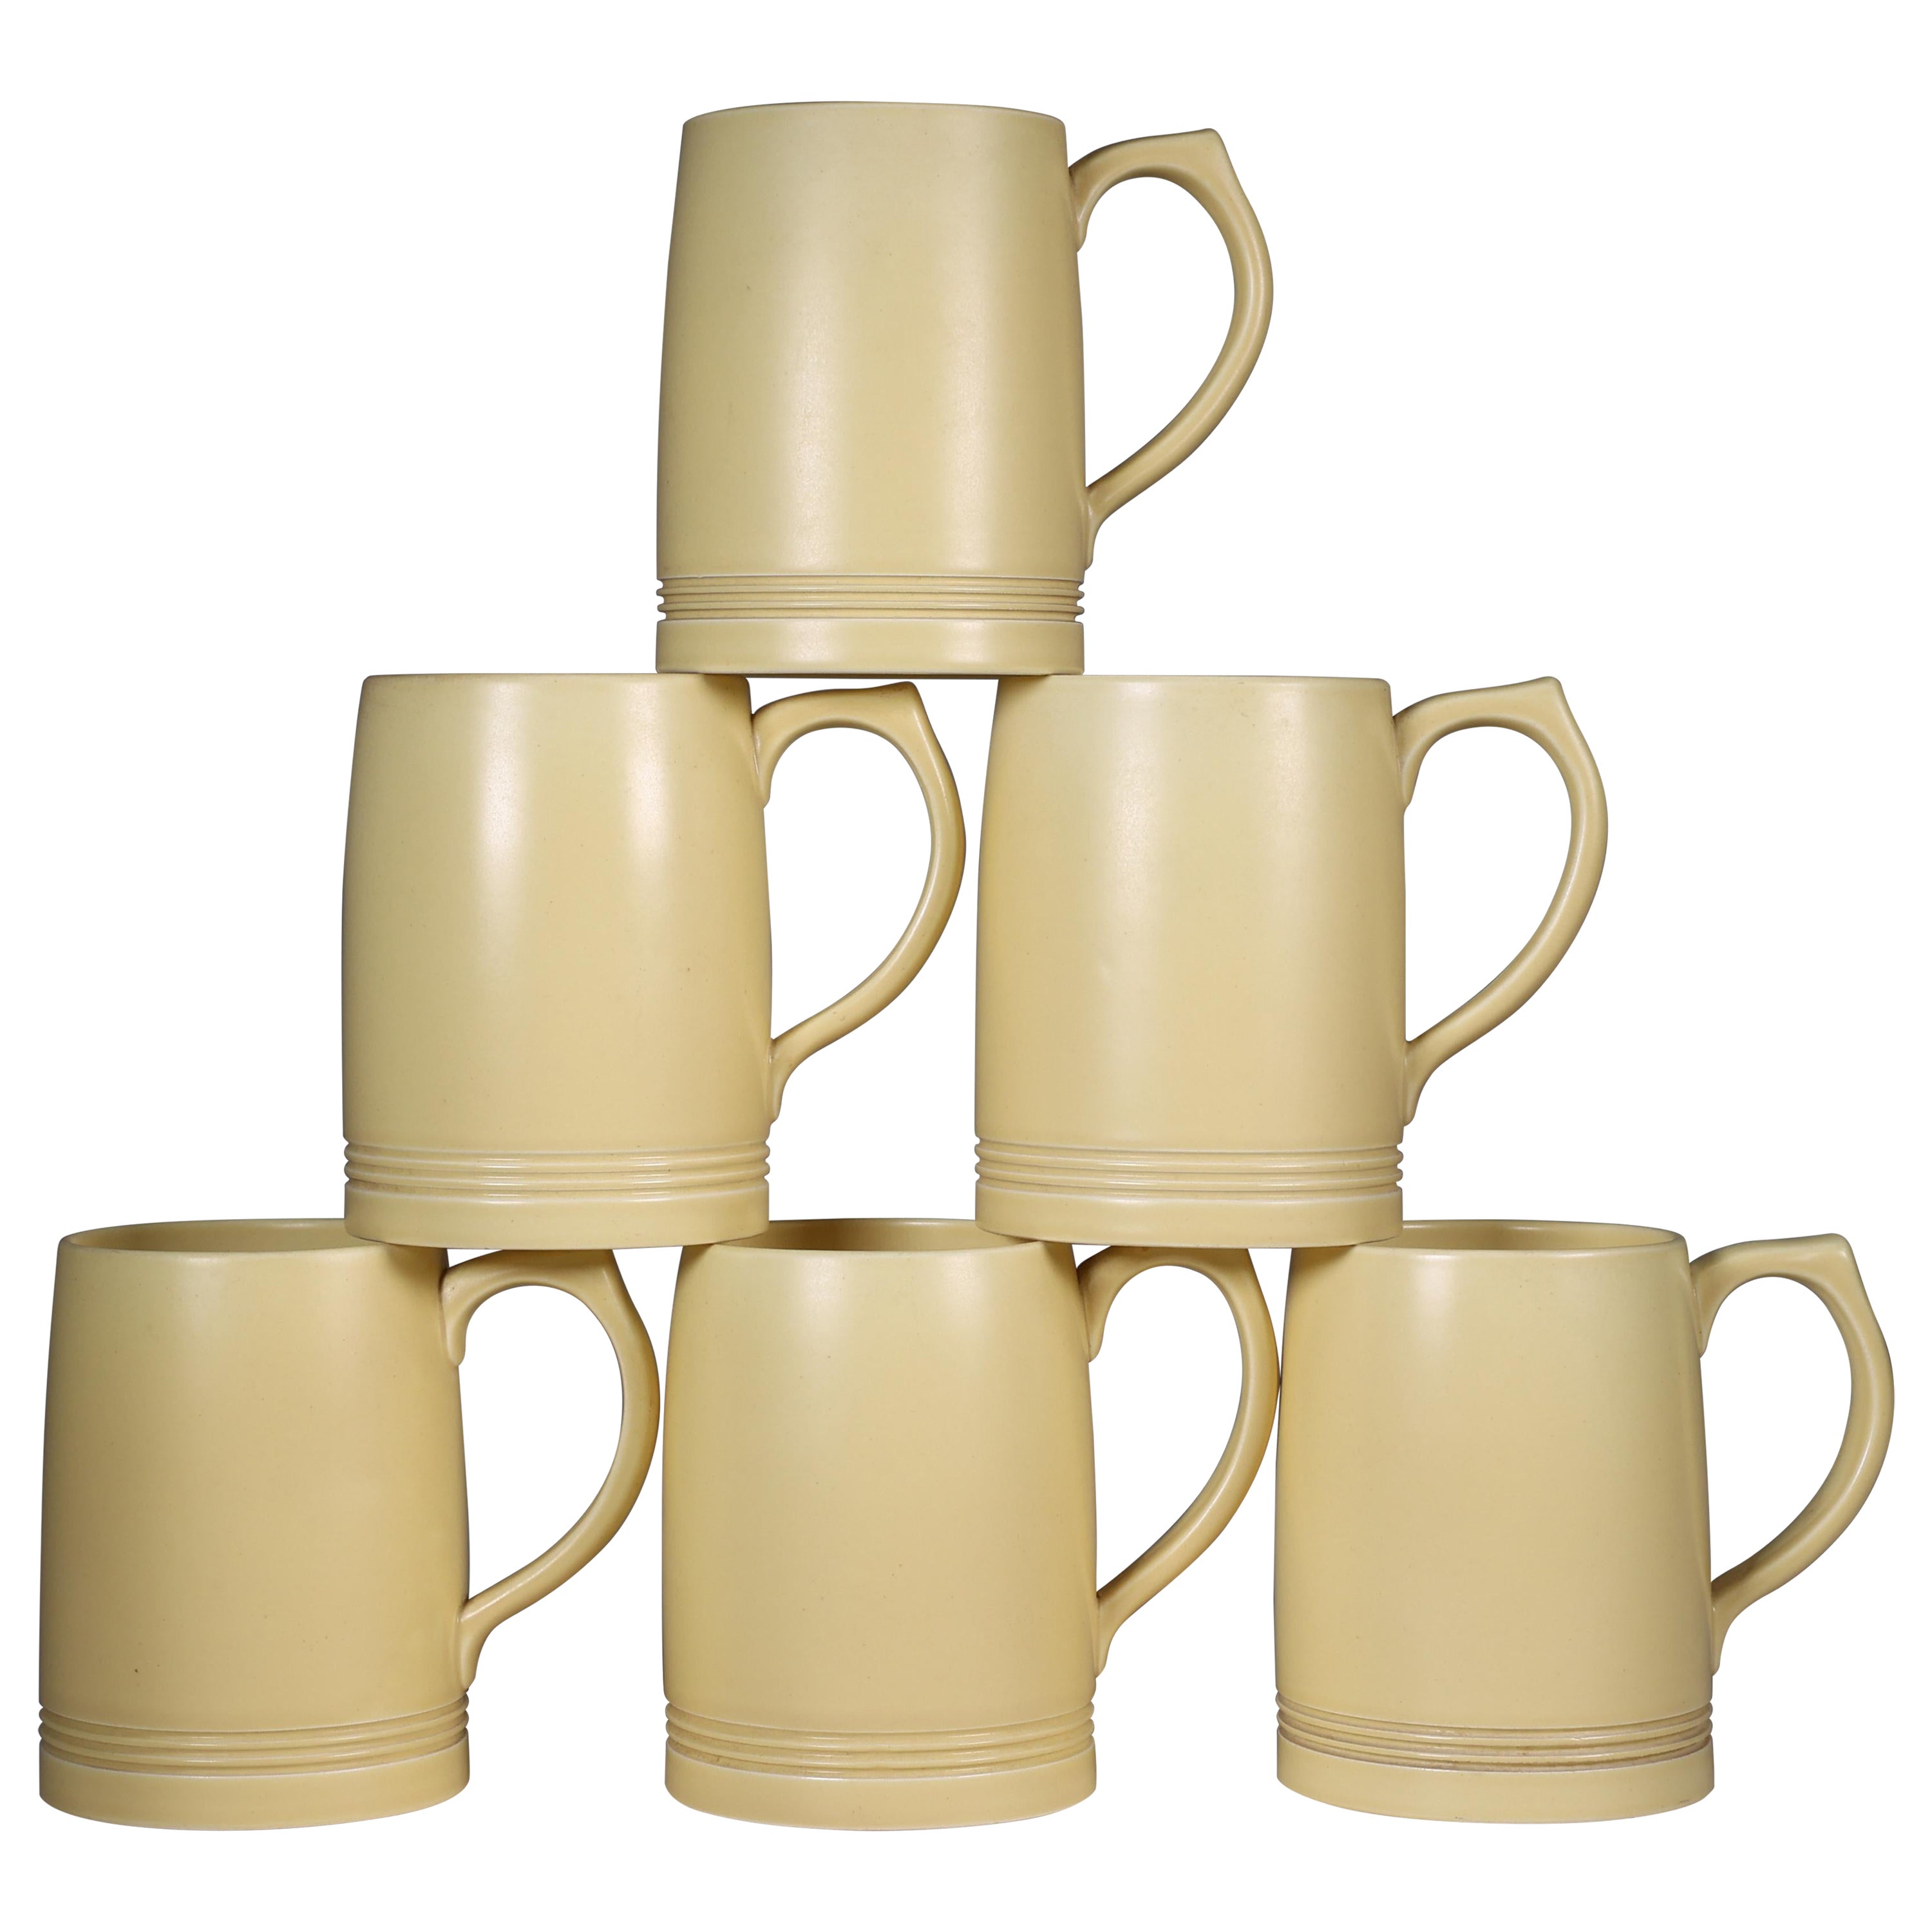 Keith Murray for Wedgwood. A rare complete and original set of six lemonade mugs